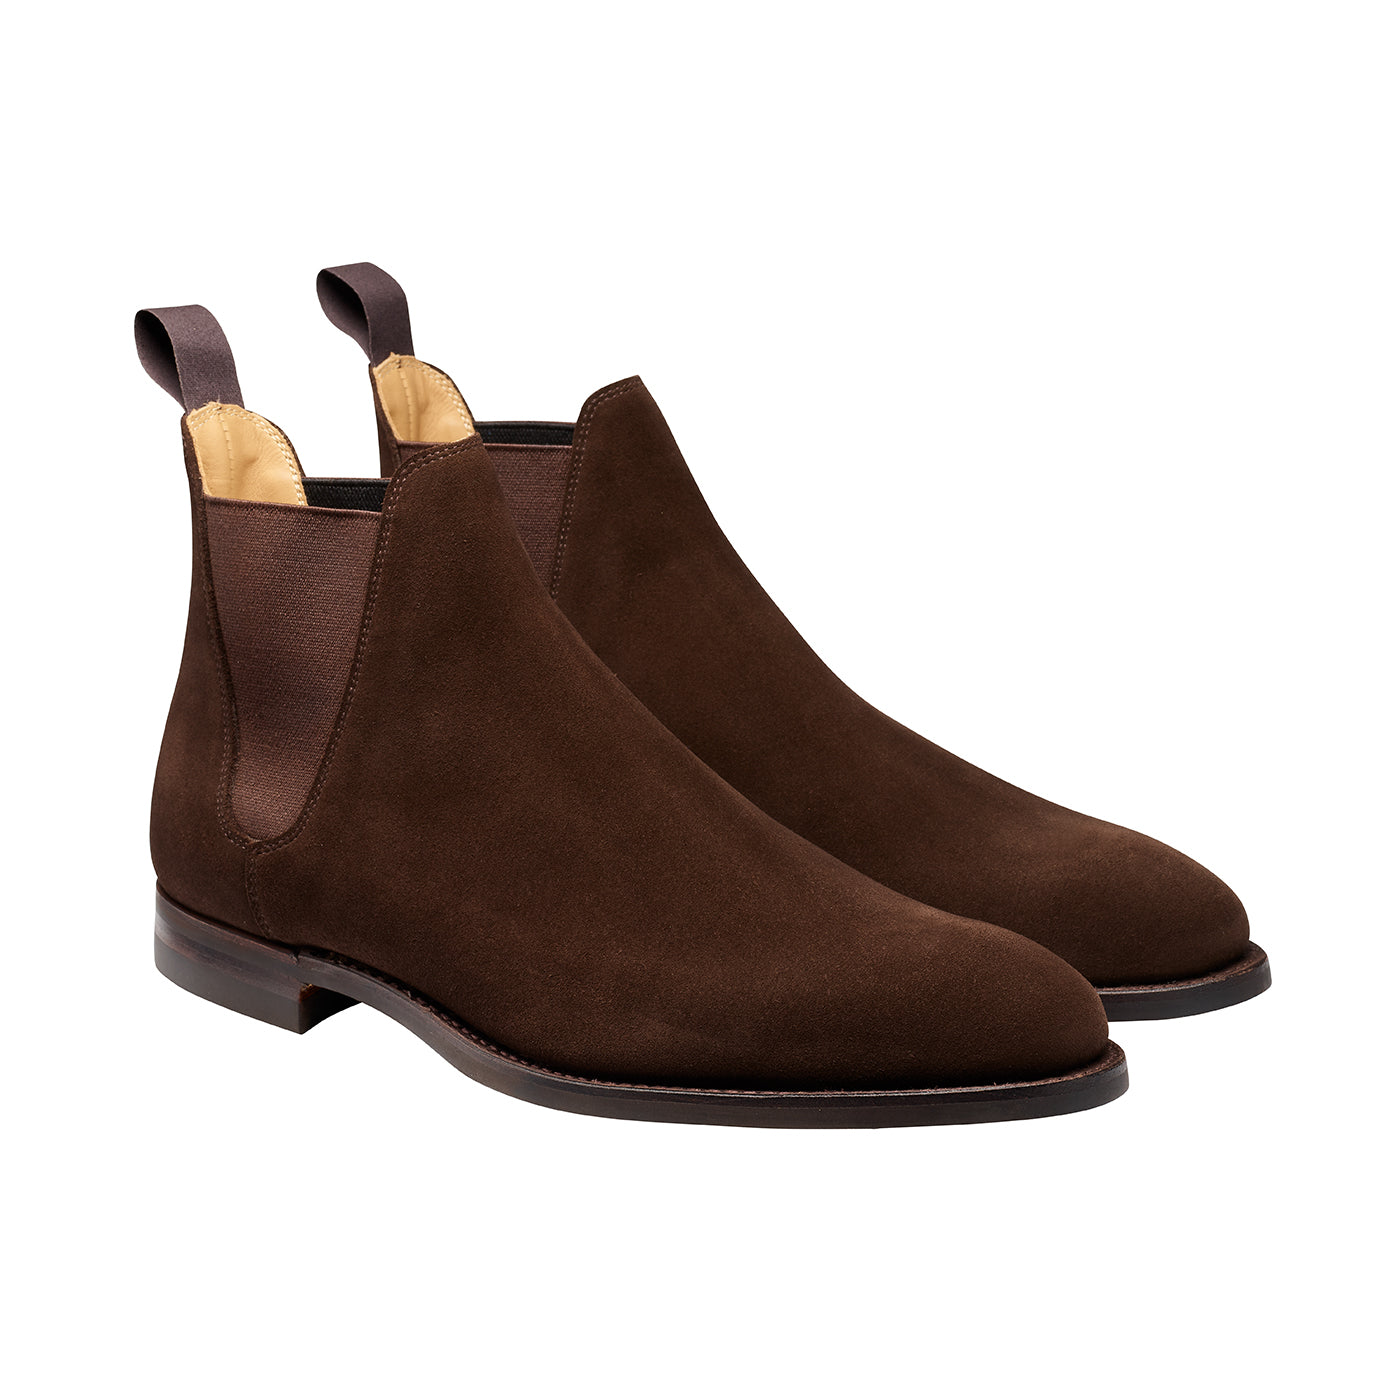 Chelsea 8, dark brown suede, chelsea boot made in leather, branded Crockett & Jones